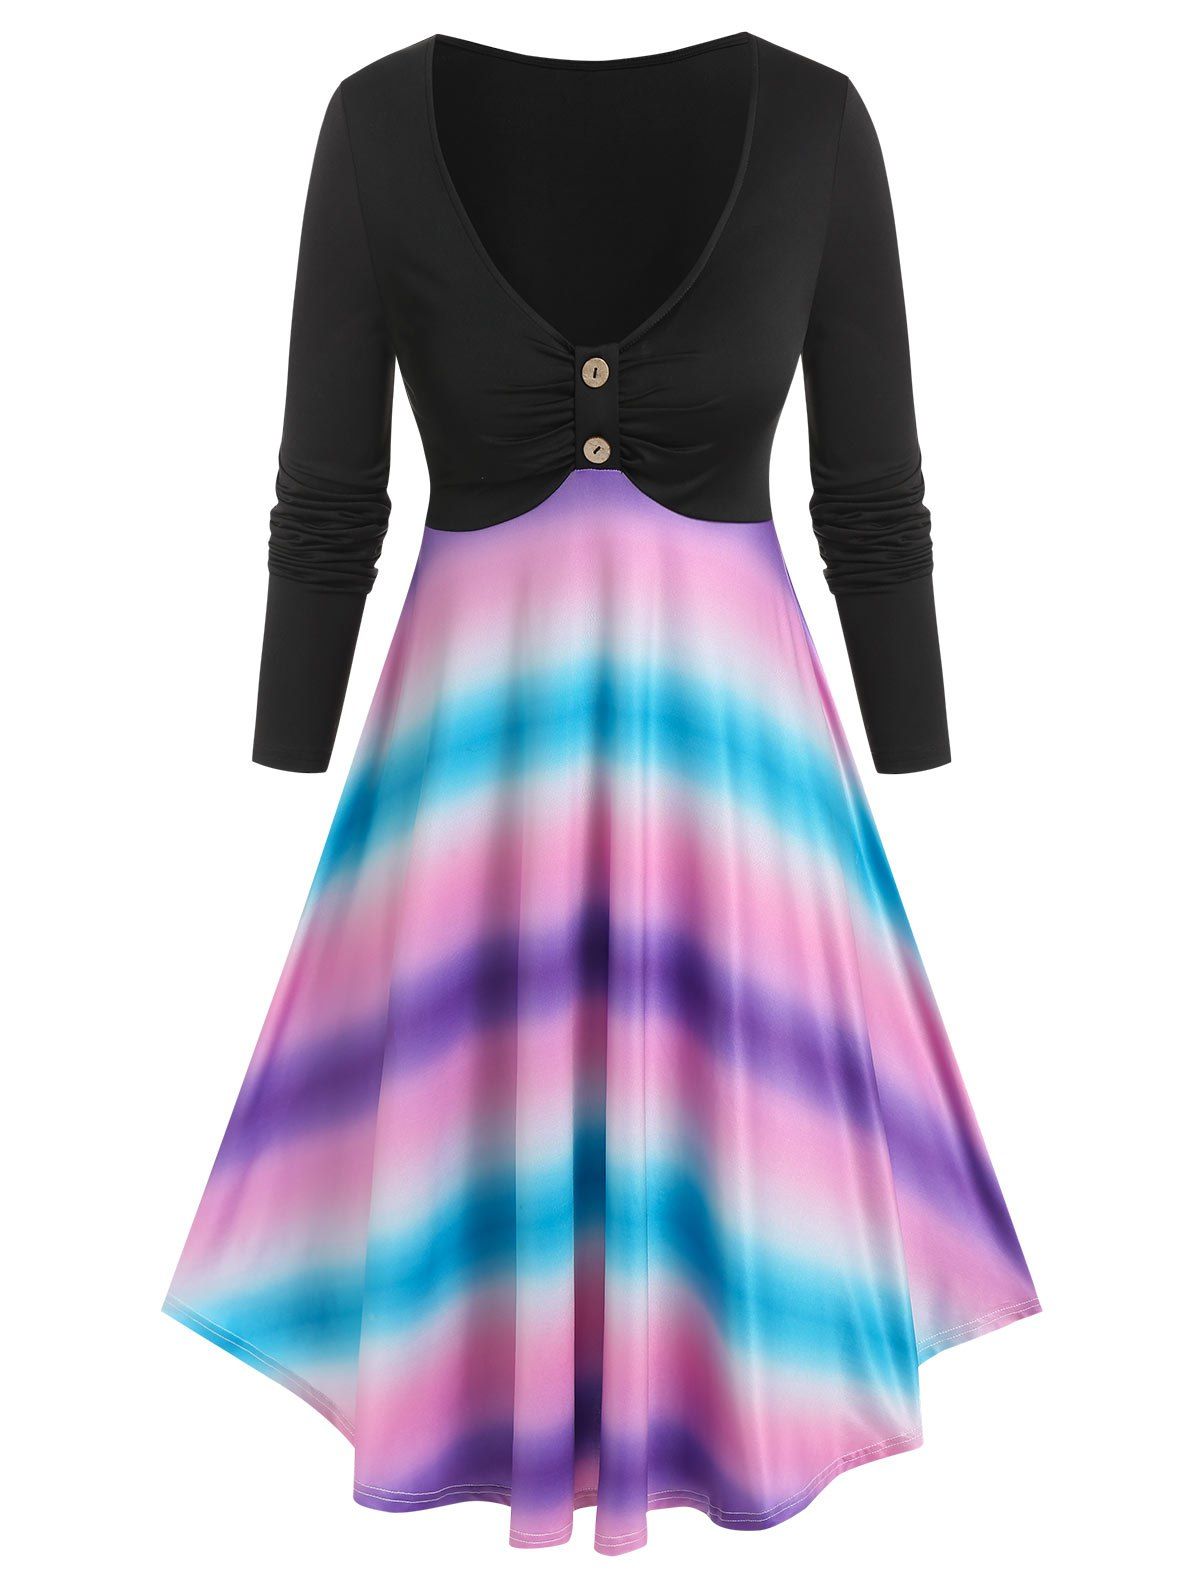 Tie Dye Print Long Sleeve Dress - multicolor XXL